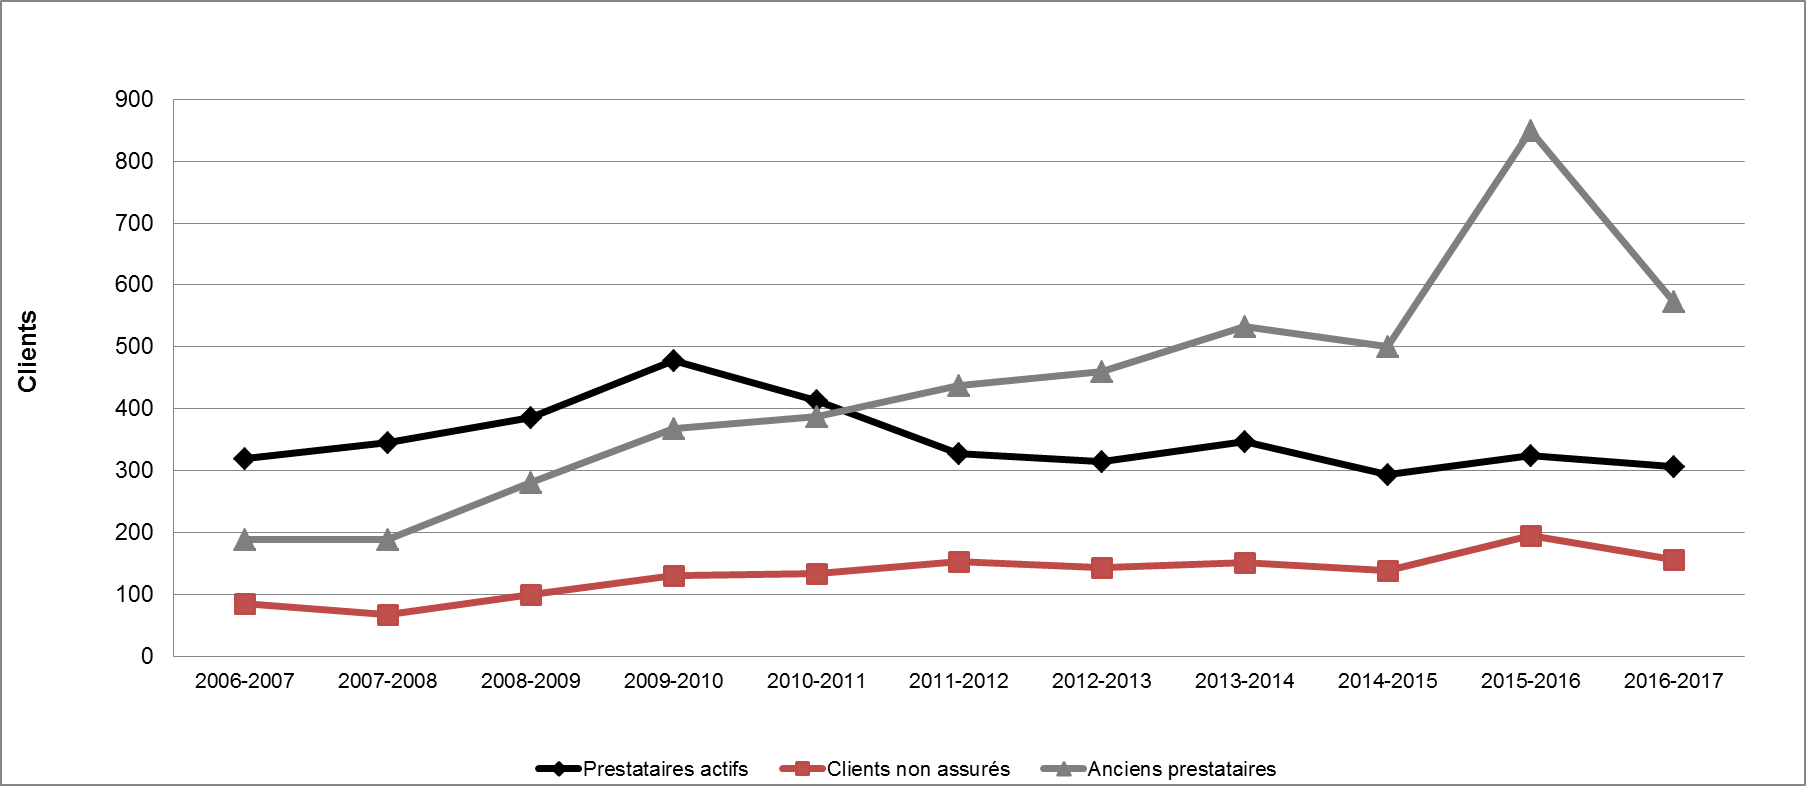 Graphique 37 - Répartition des clients des PEMS selon le type (2006-2007 à 2016-2017)